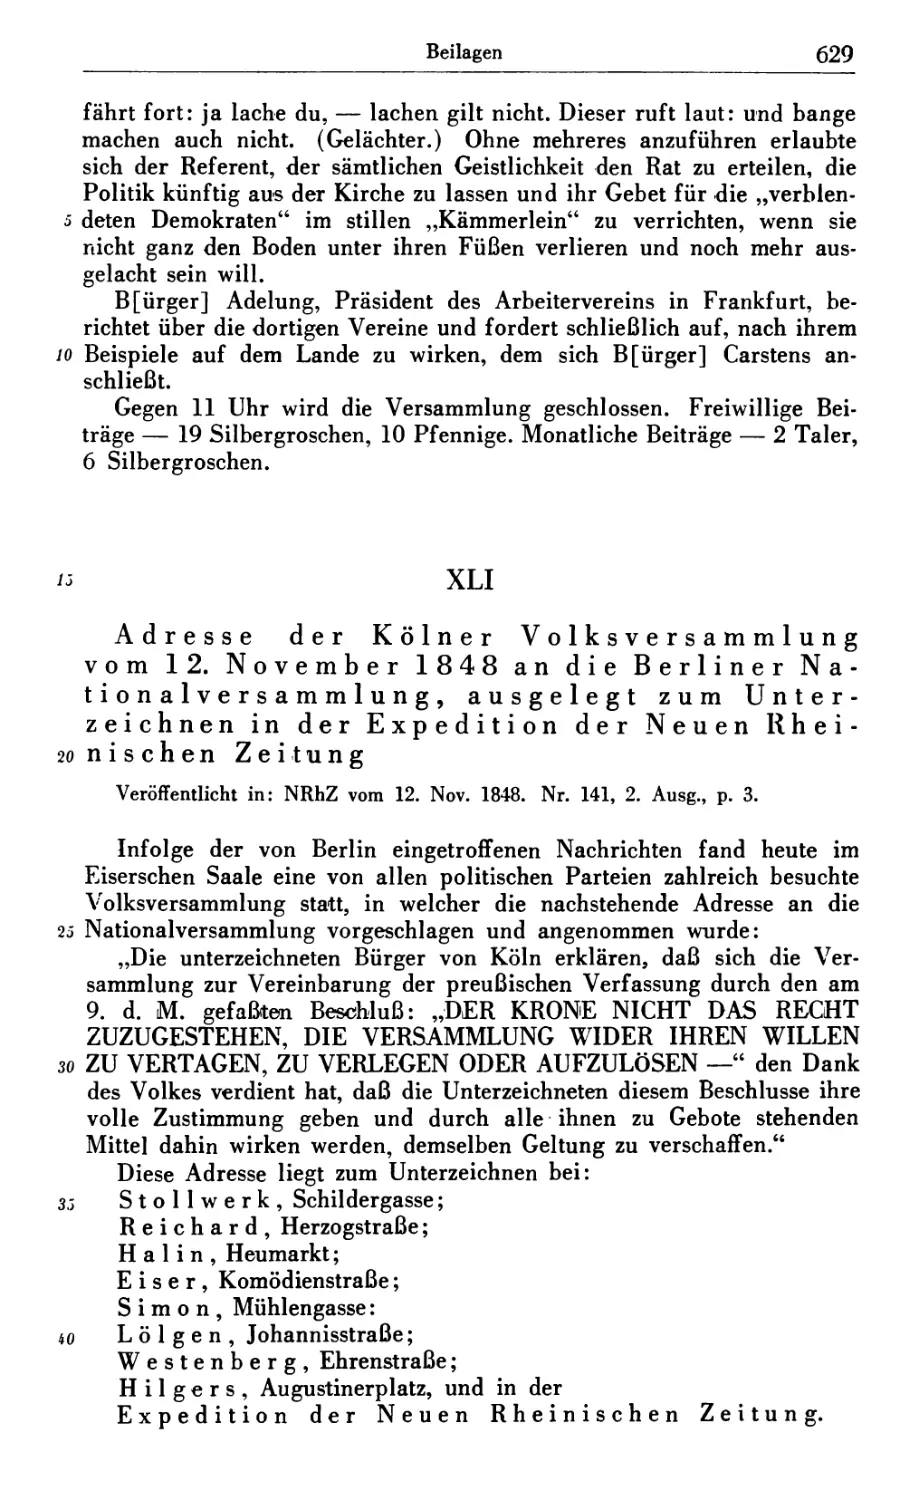 XLI. Adresse der Kölner Volksversammlung vom 12. November 1848 an die Berliner Nationalversammlung, ausgelegt zum Unterzeichnen in der Expedition der Neuen Rheinischen Zeitung